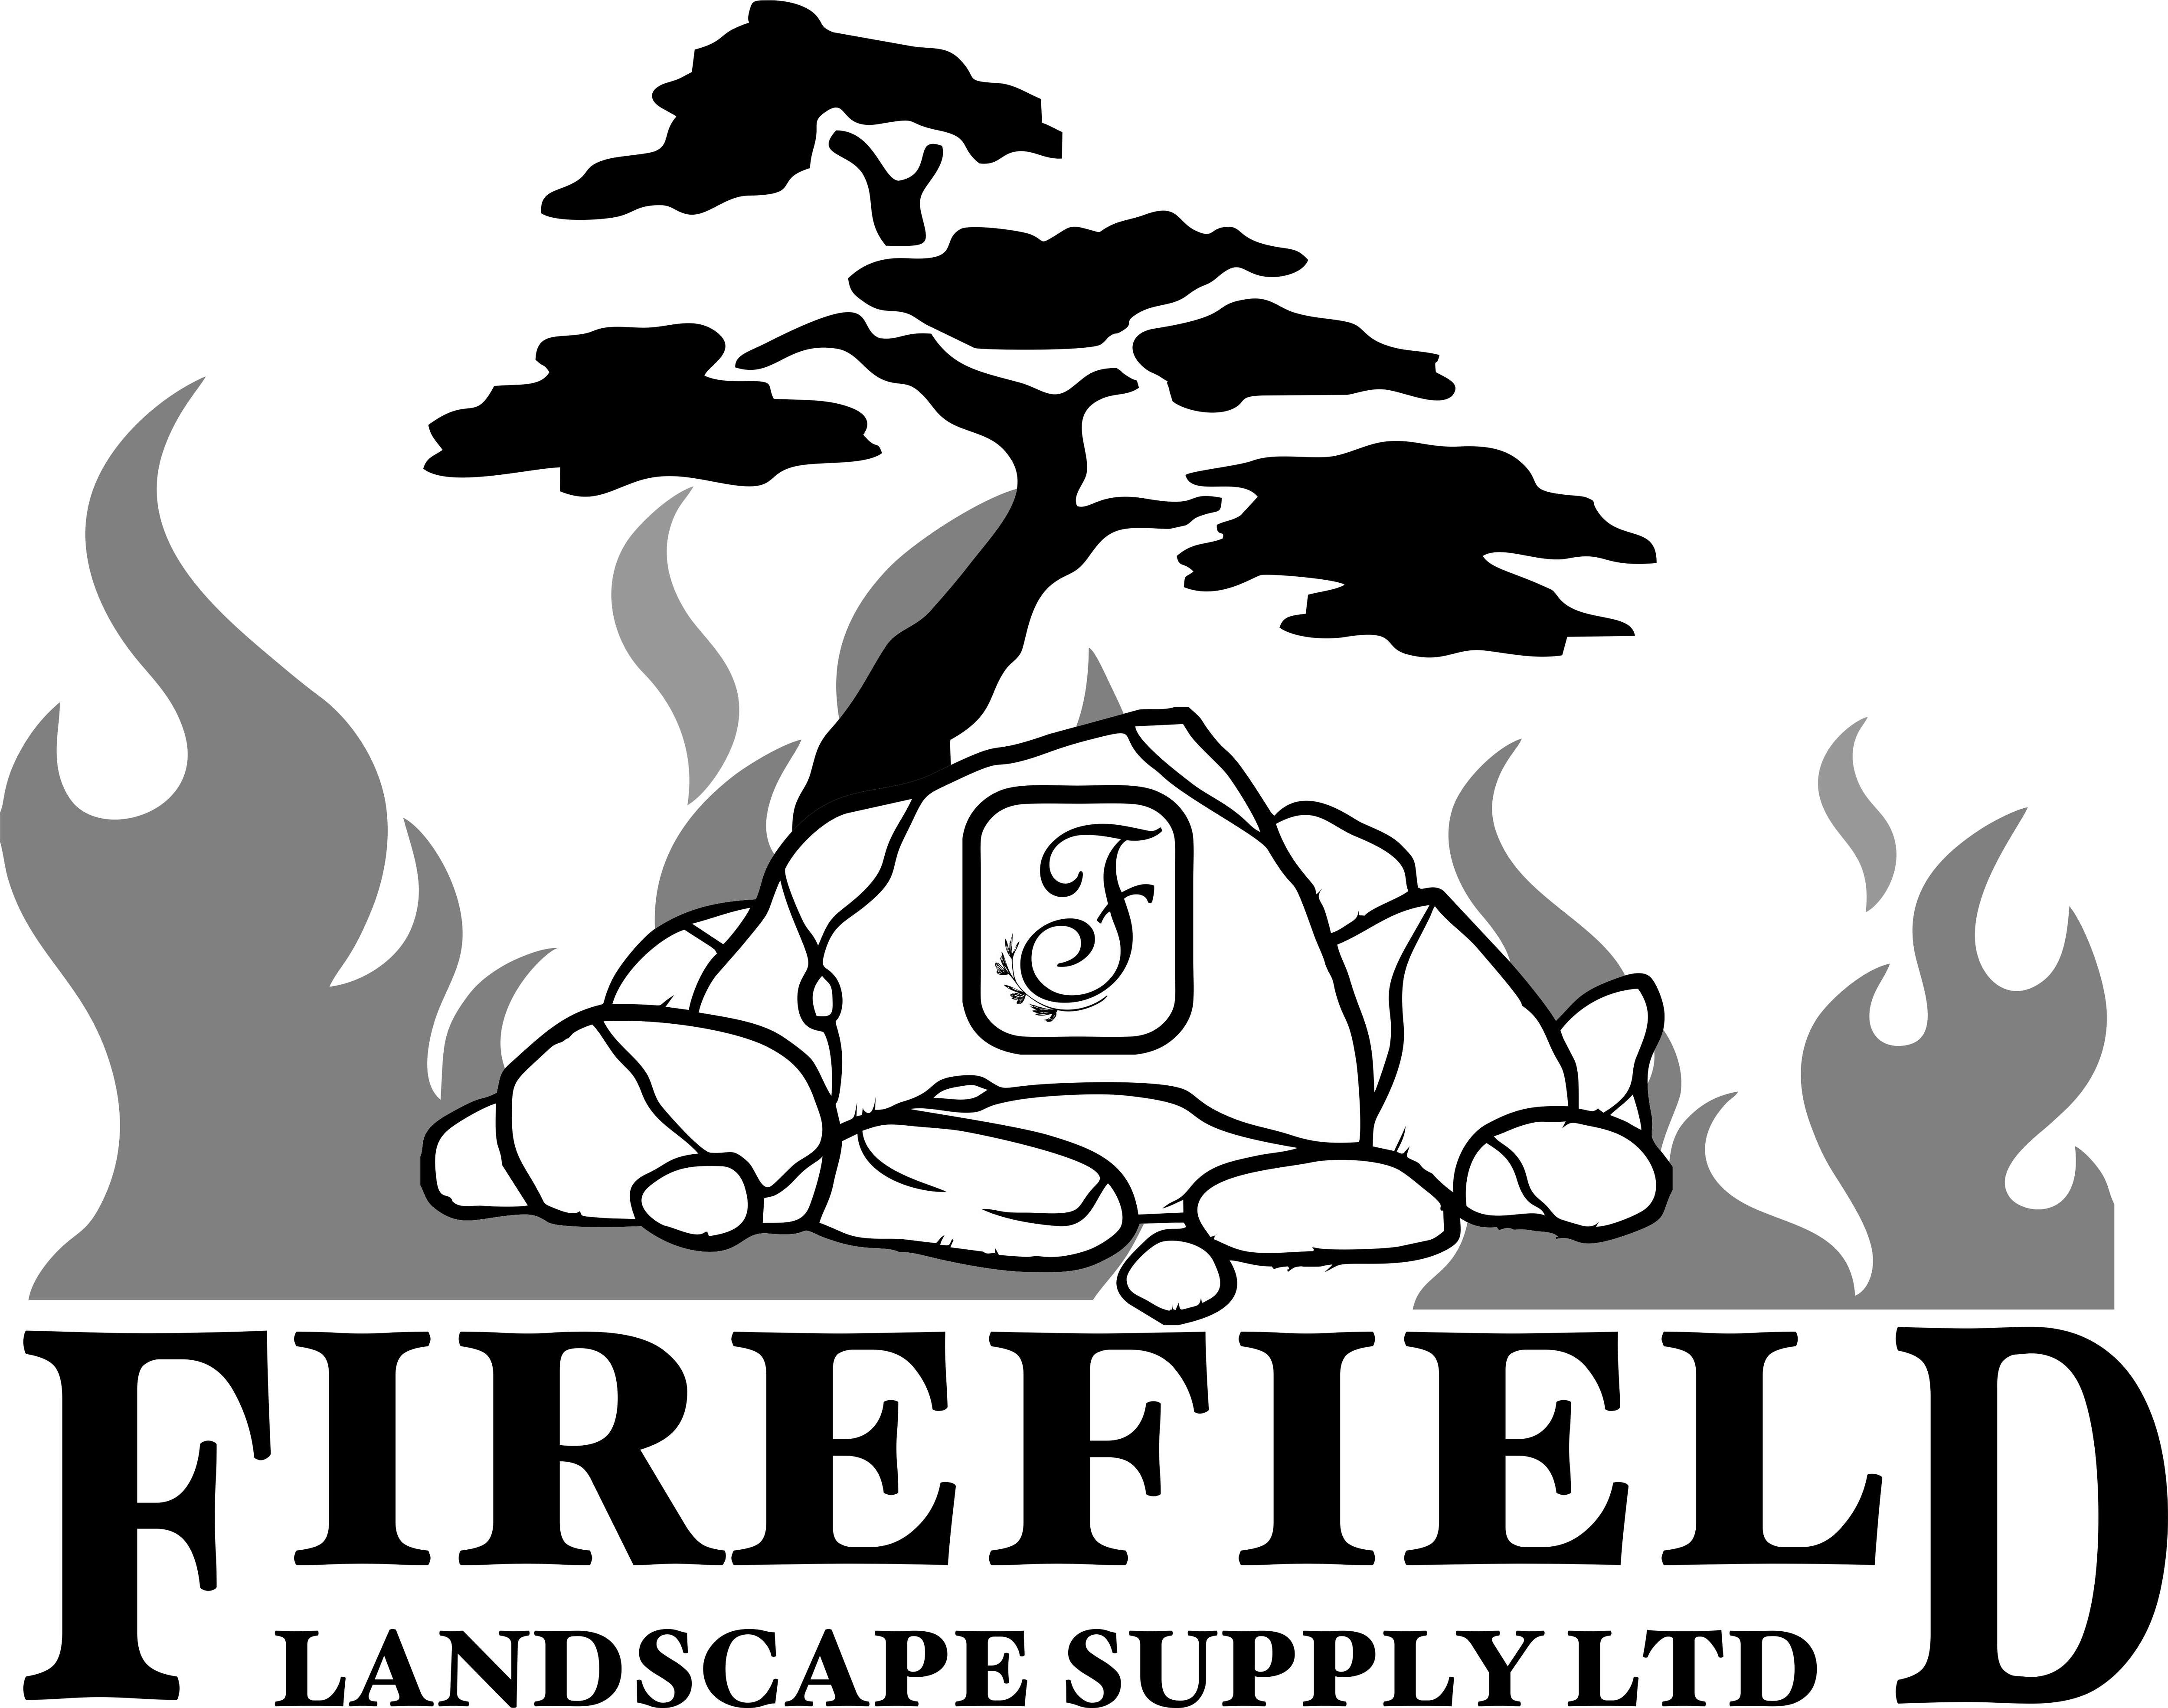 Firefield Landscape Supply Ltd